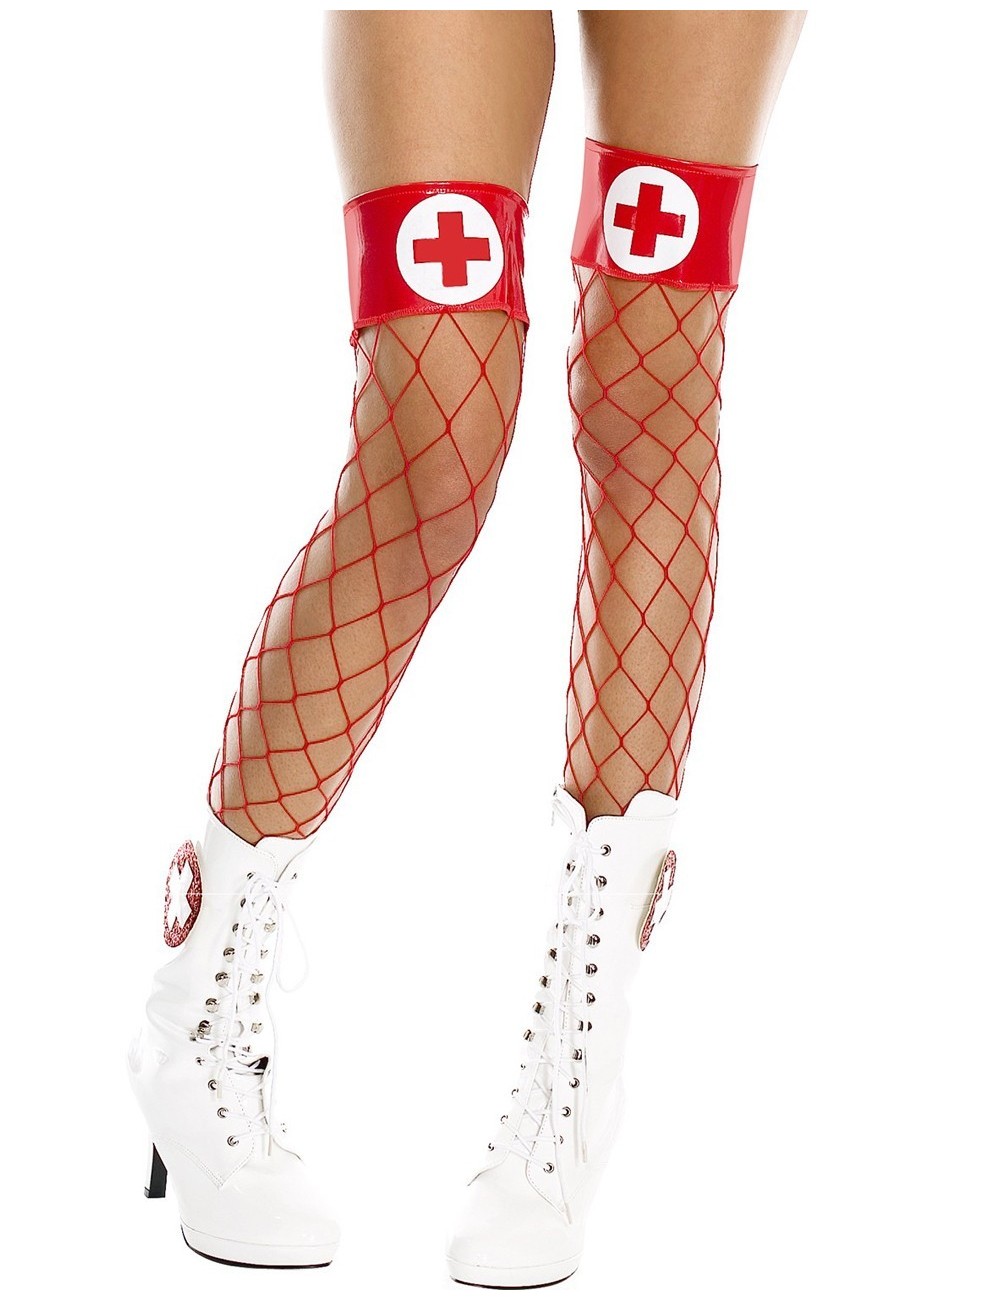 Lingerie - Bas Autofixants - Bas filet rouges autofixants jarretières brillantes et croix infirmière - MH4884REW - Music Legs